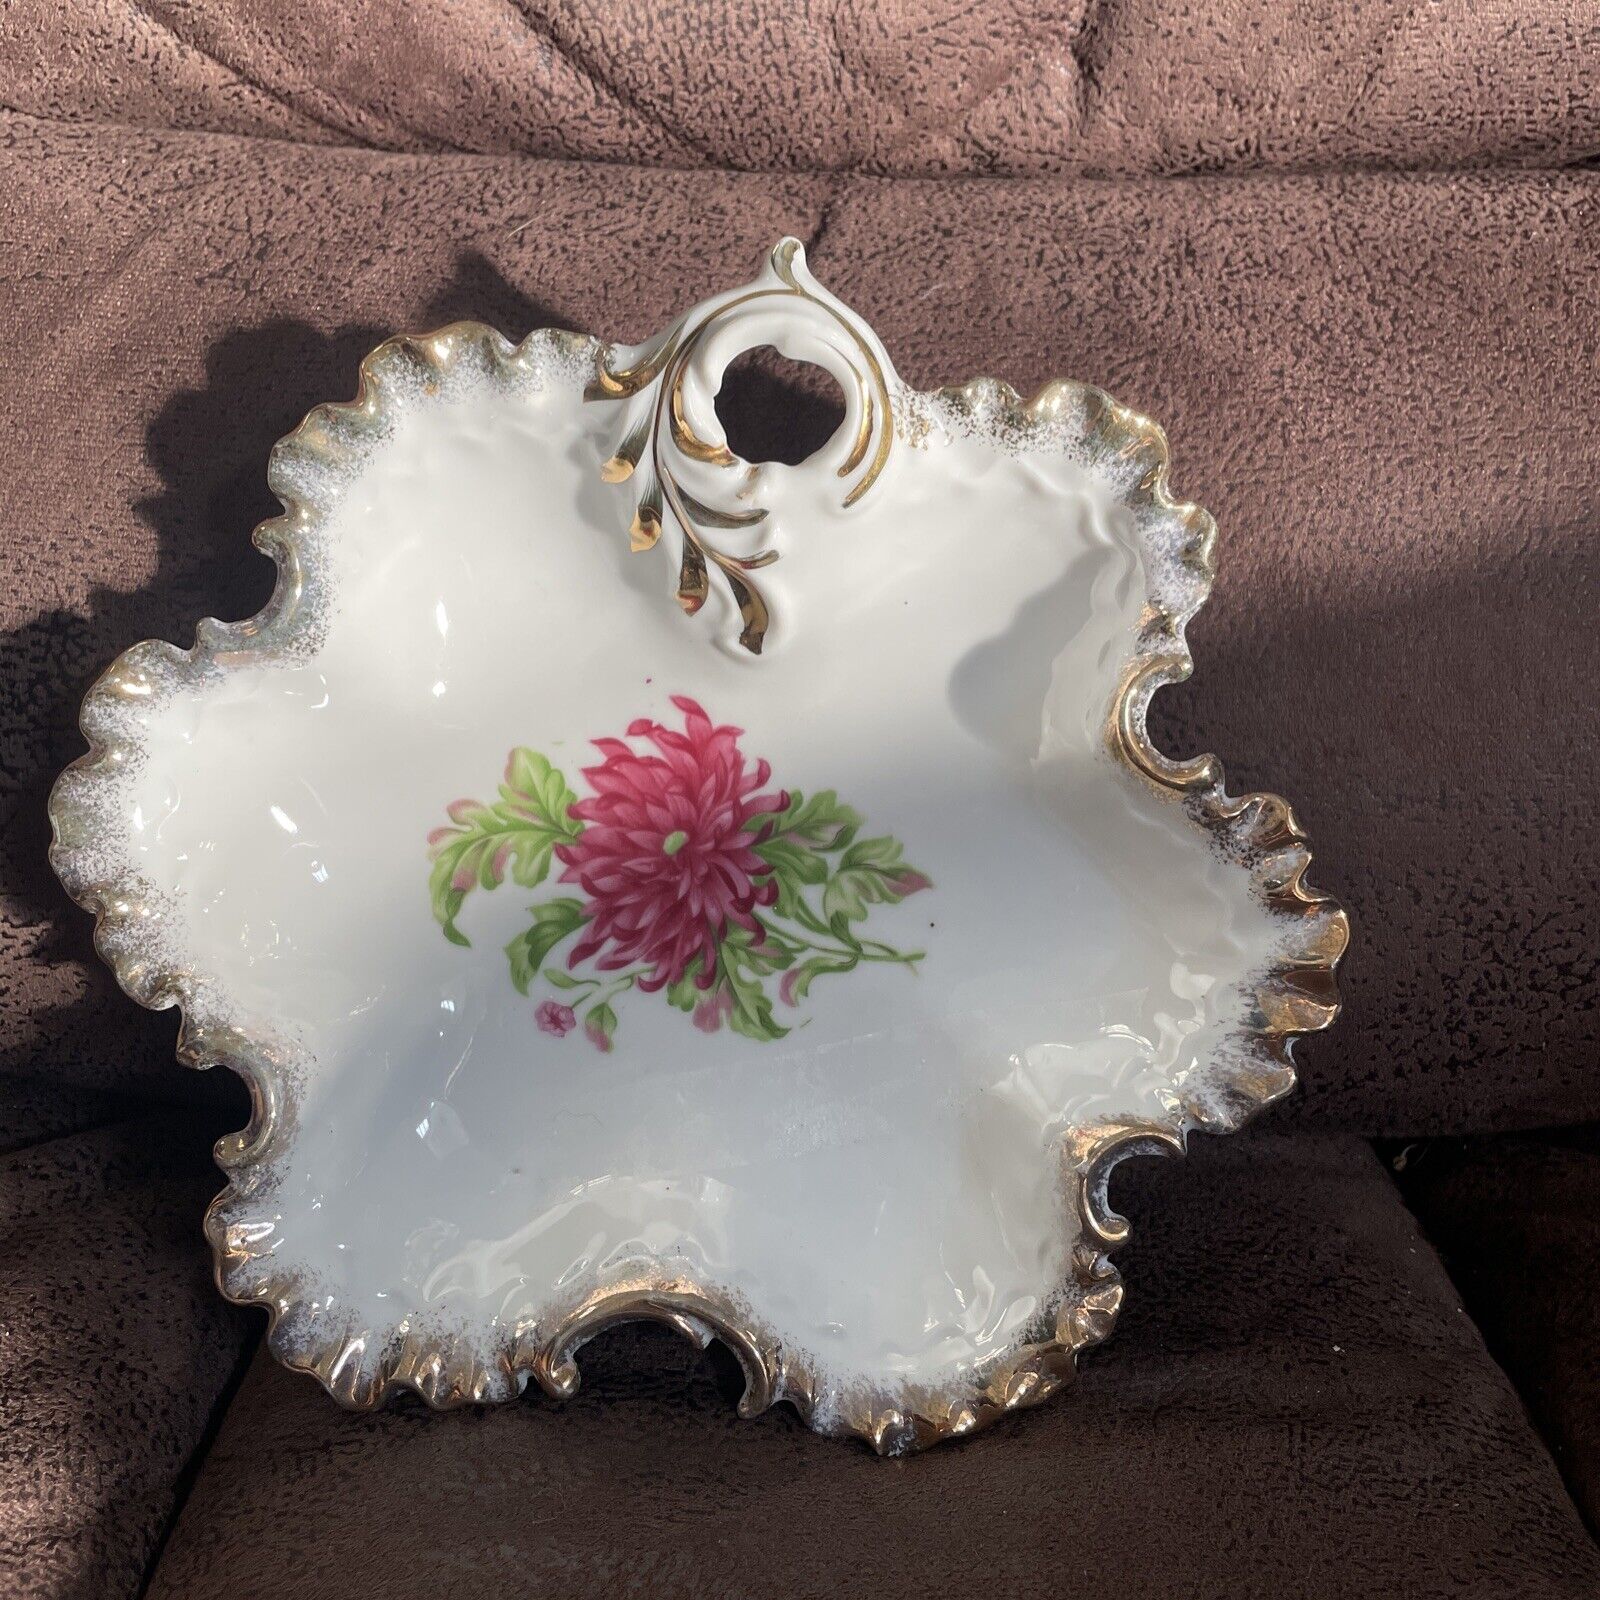 Antique French porcelain bonbonniere small bowl floral decor 